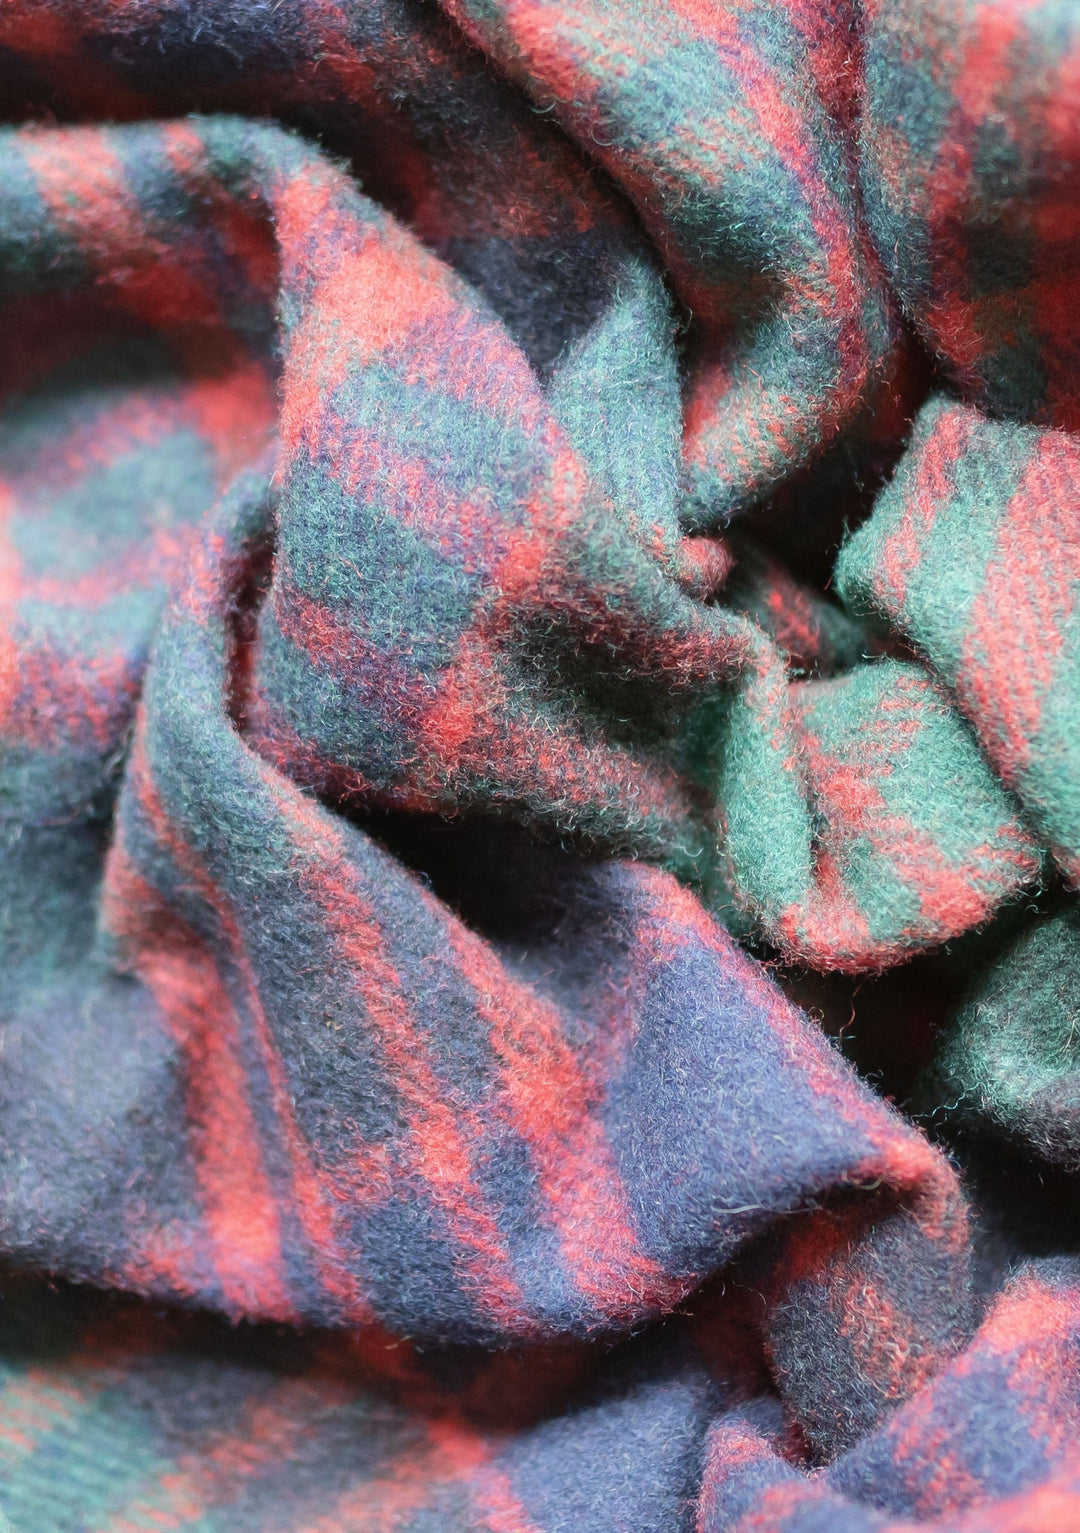 Kleine Decke aus recycelter Wolle im Macdonald-Schottenmuster